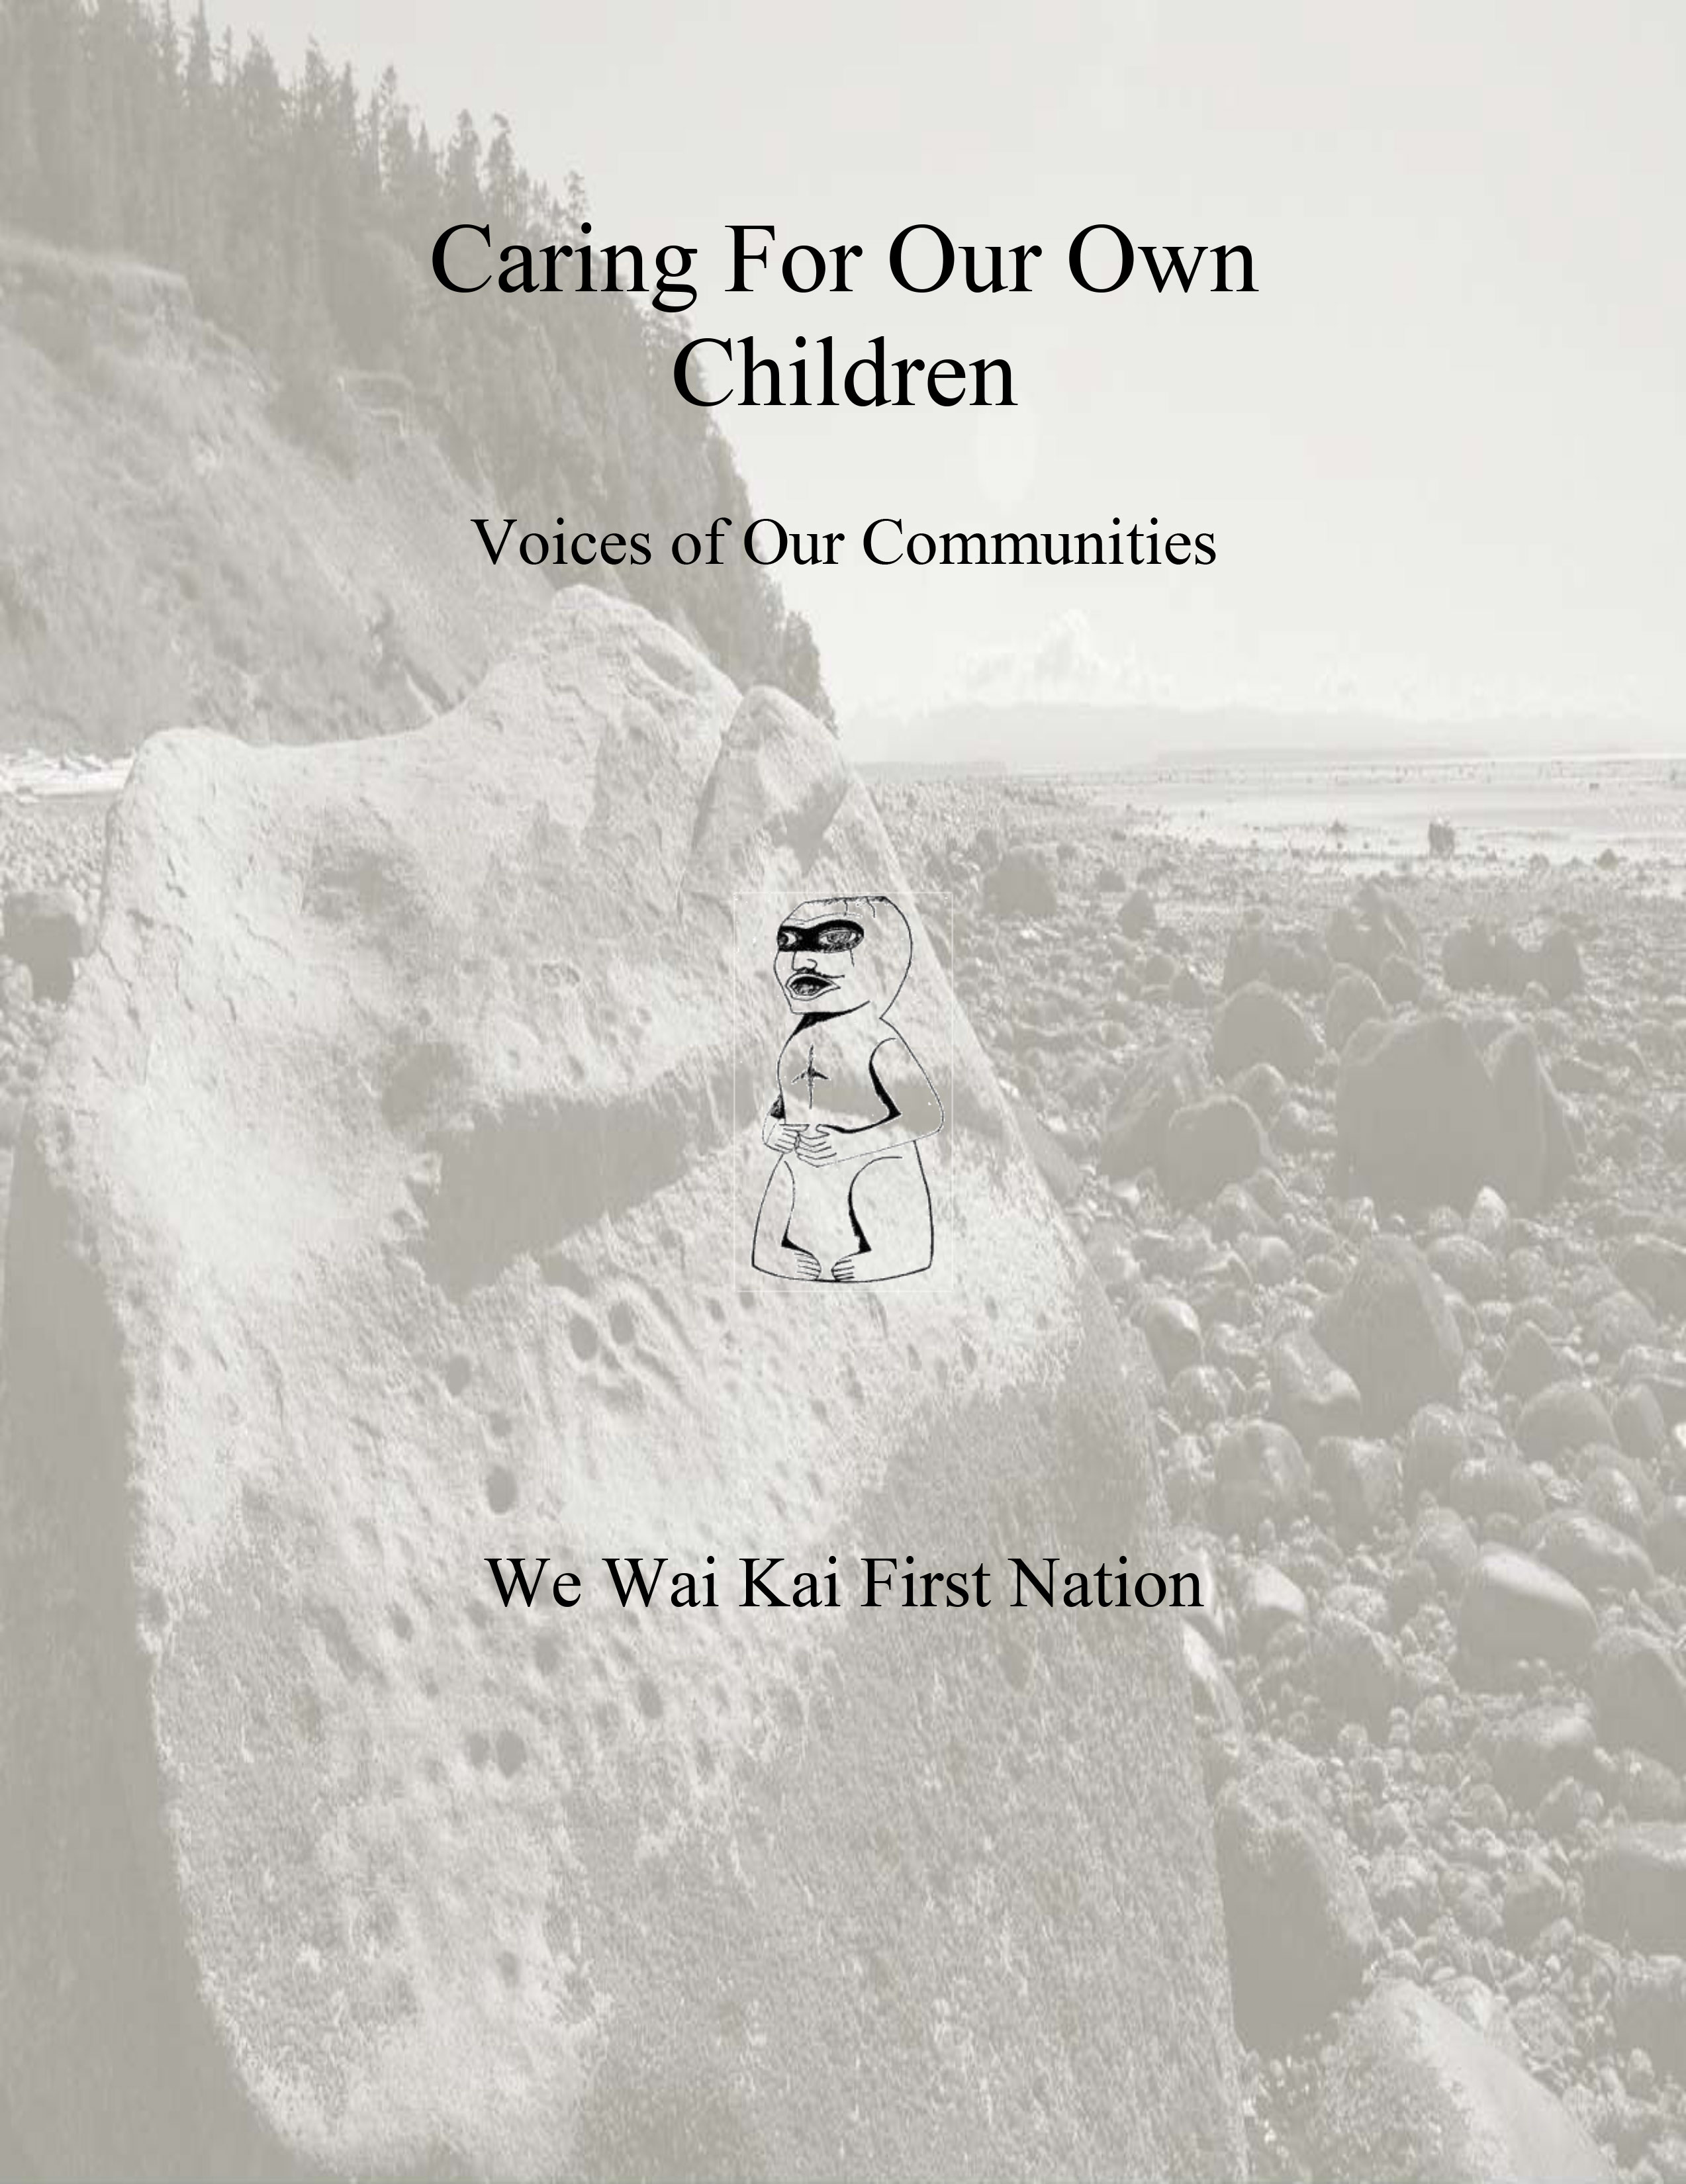 We Wai Kai First Nation - October 2012